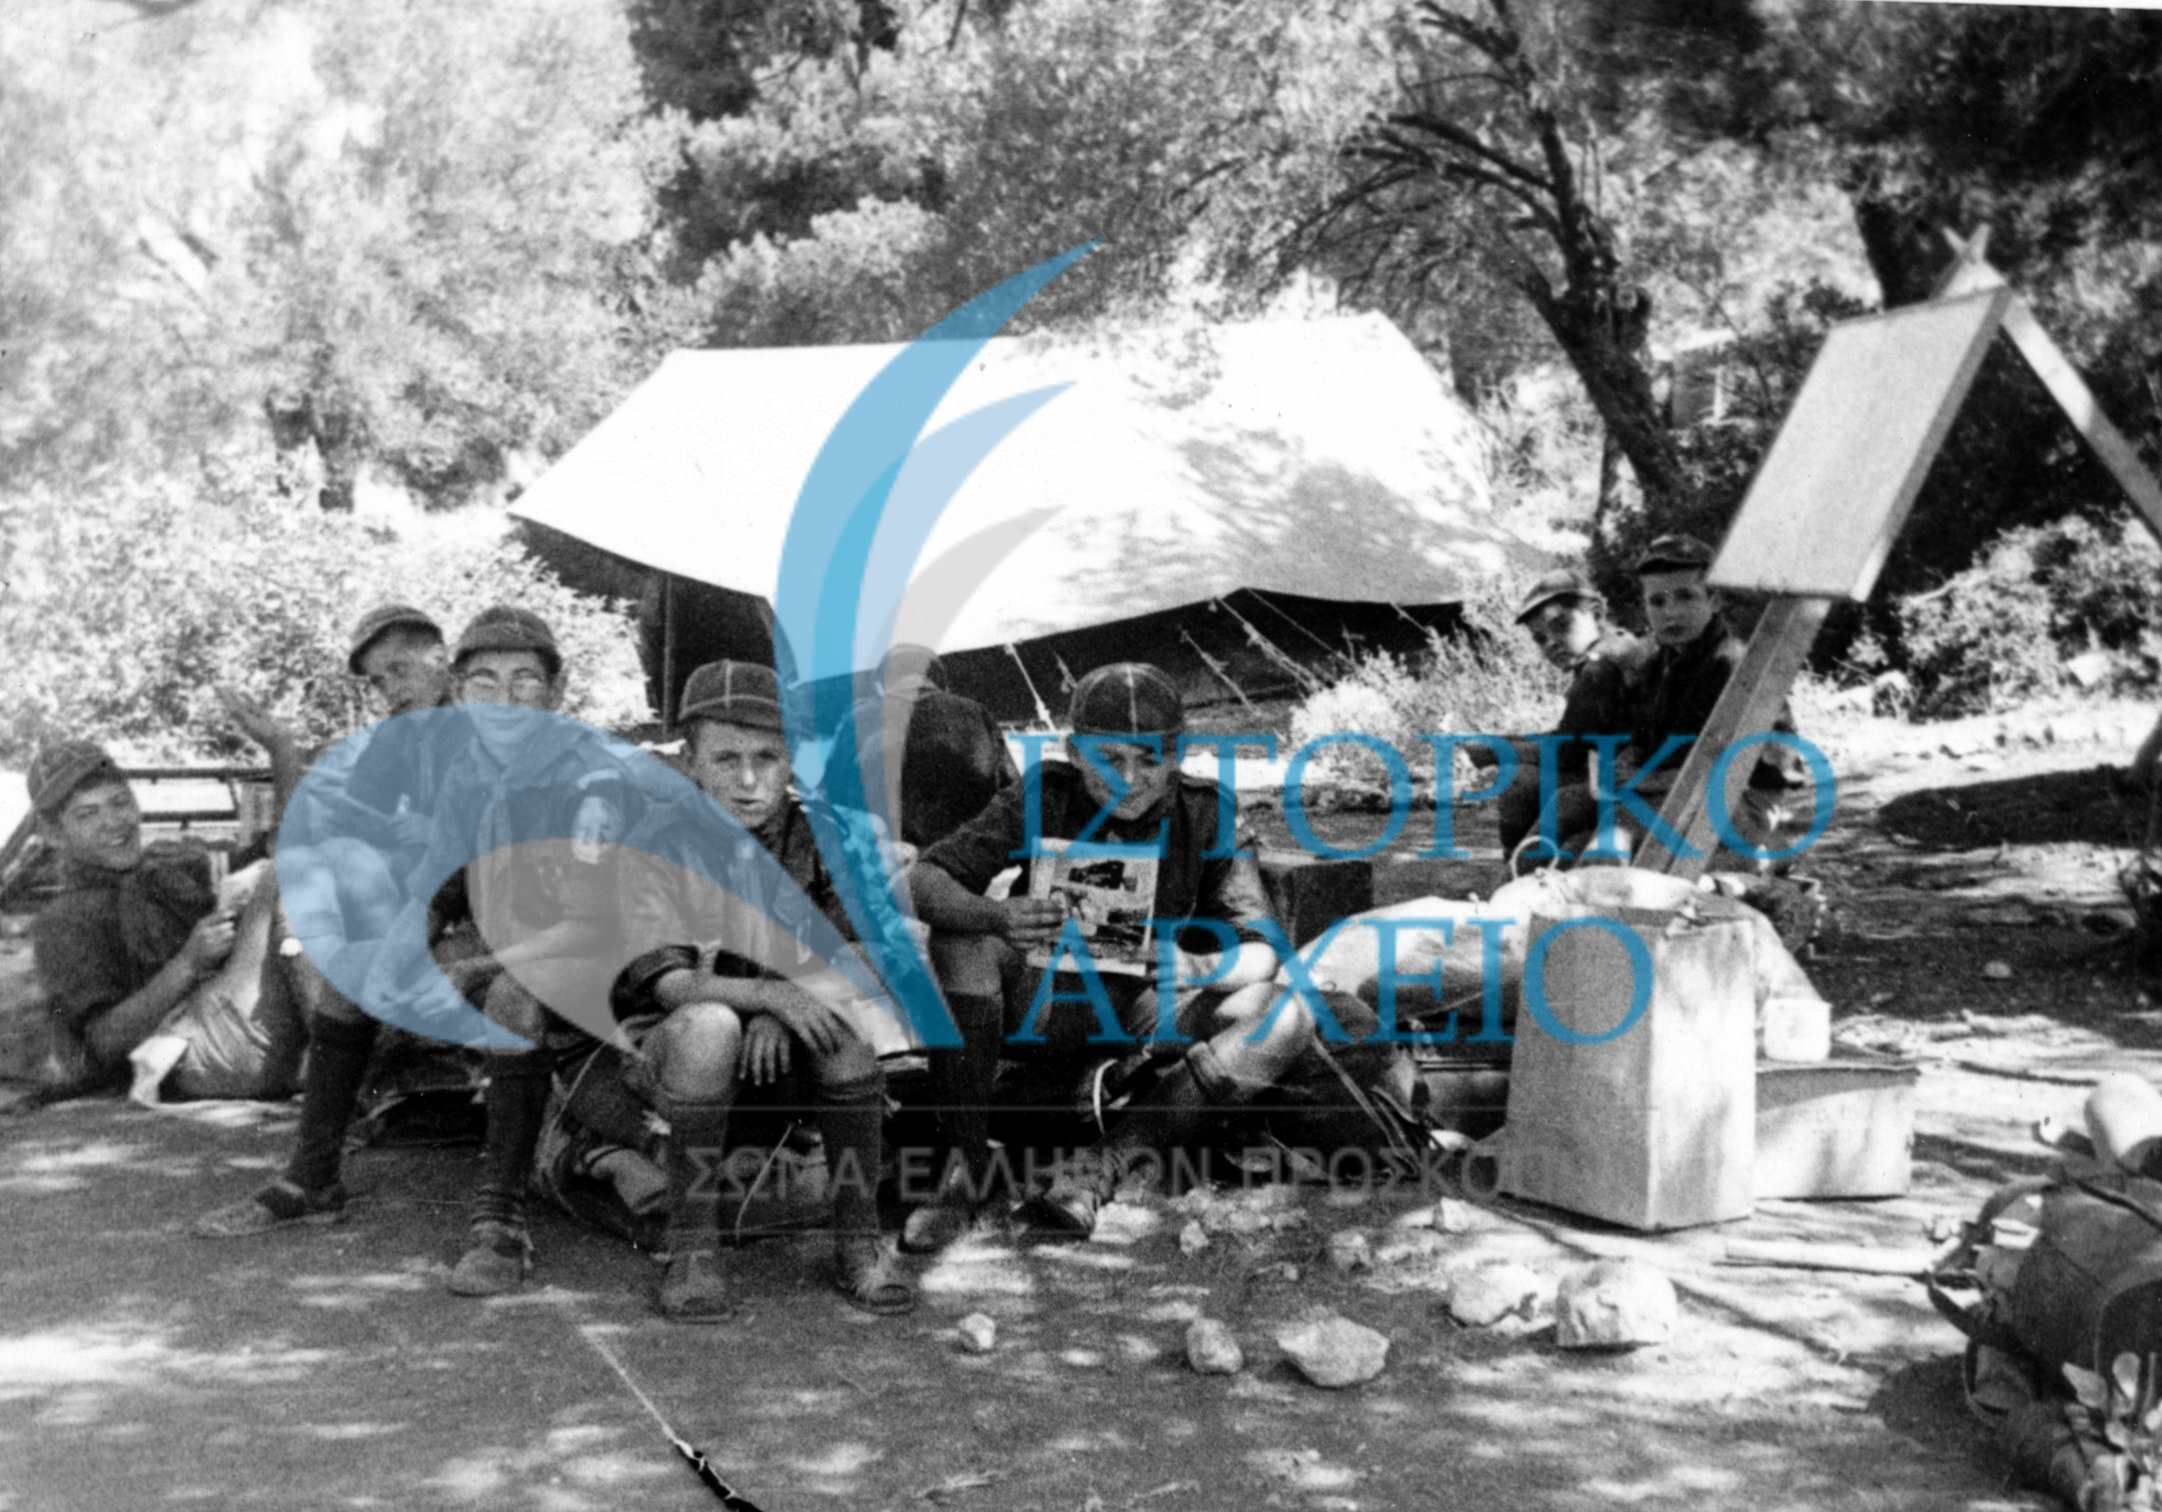 Λυκόπουλα της Δάφνης στην γωνιά της εξάδας τους στην κατασκήνωση στην Αλμυρή Κορινθίας το 1972. 